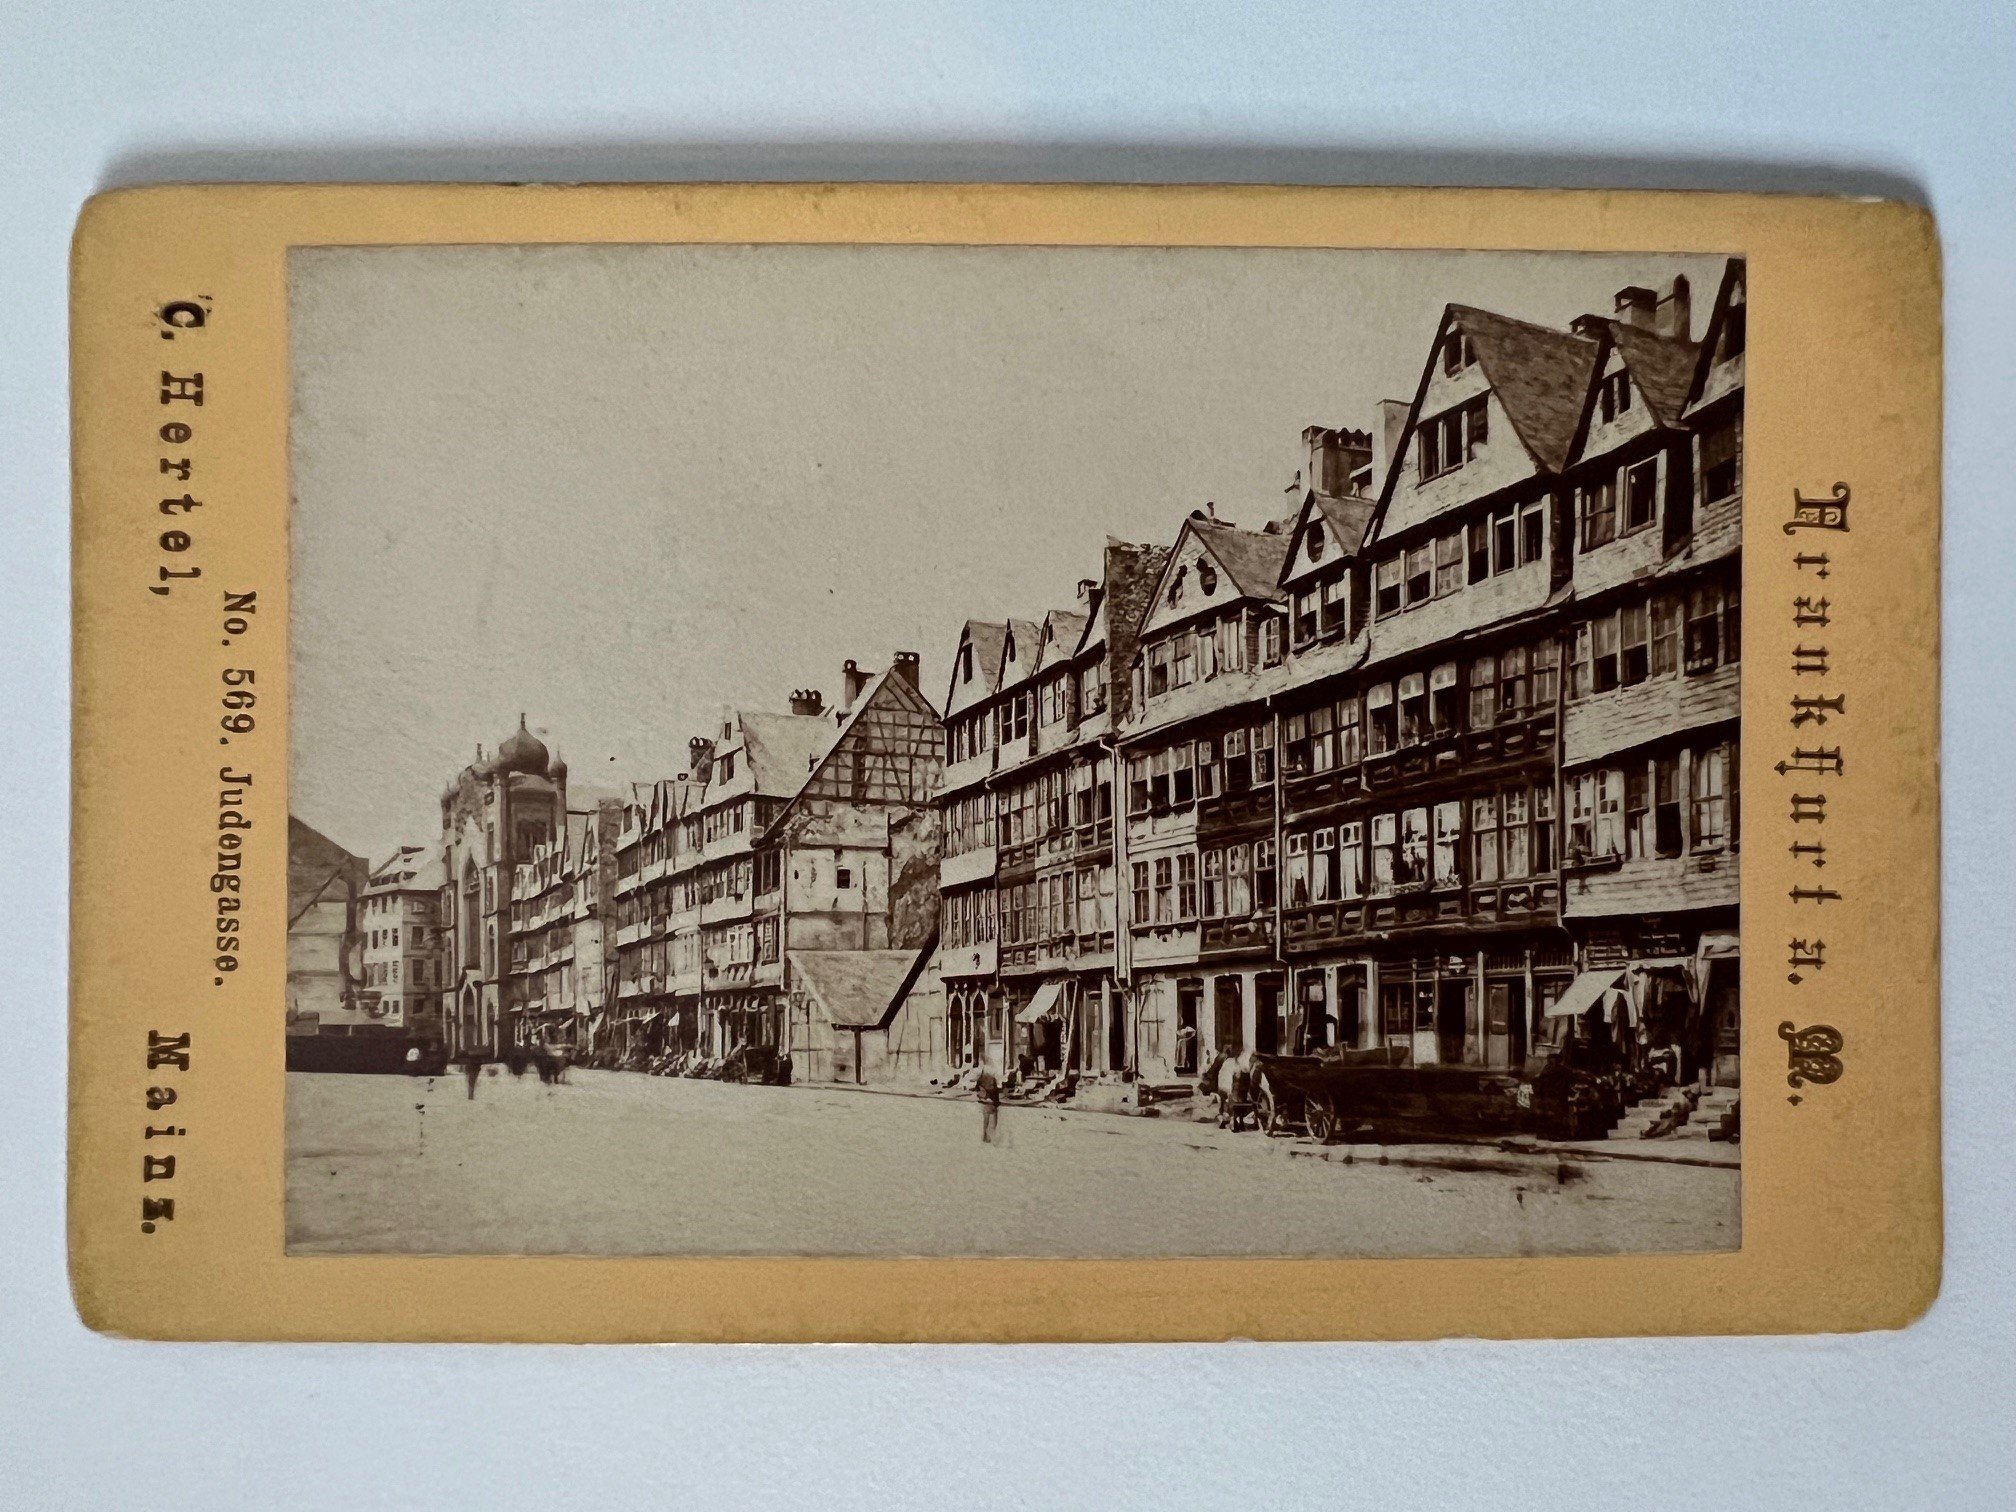 CdV, Carl Hertel, Frankfurt, Judengasse, 1870. (Taunus-Rhein-Main - Regionalgeschichtliche Sammlung Dr. Stefan Naas CC BY-NC-SA)